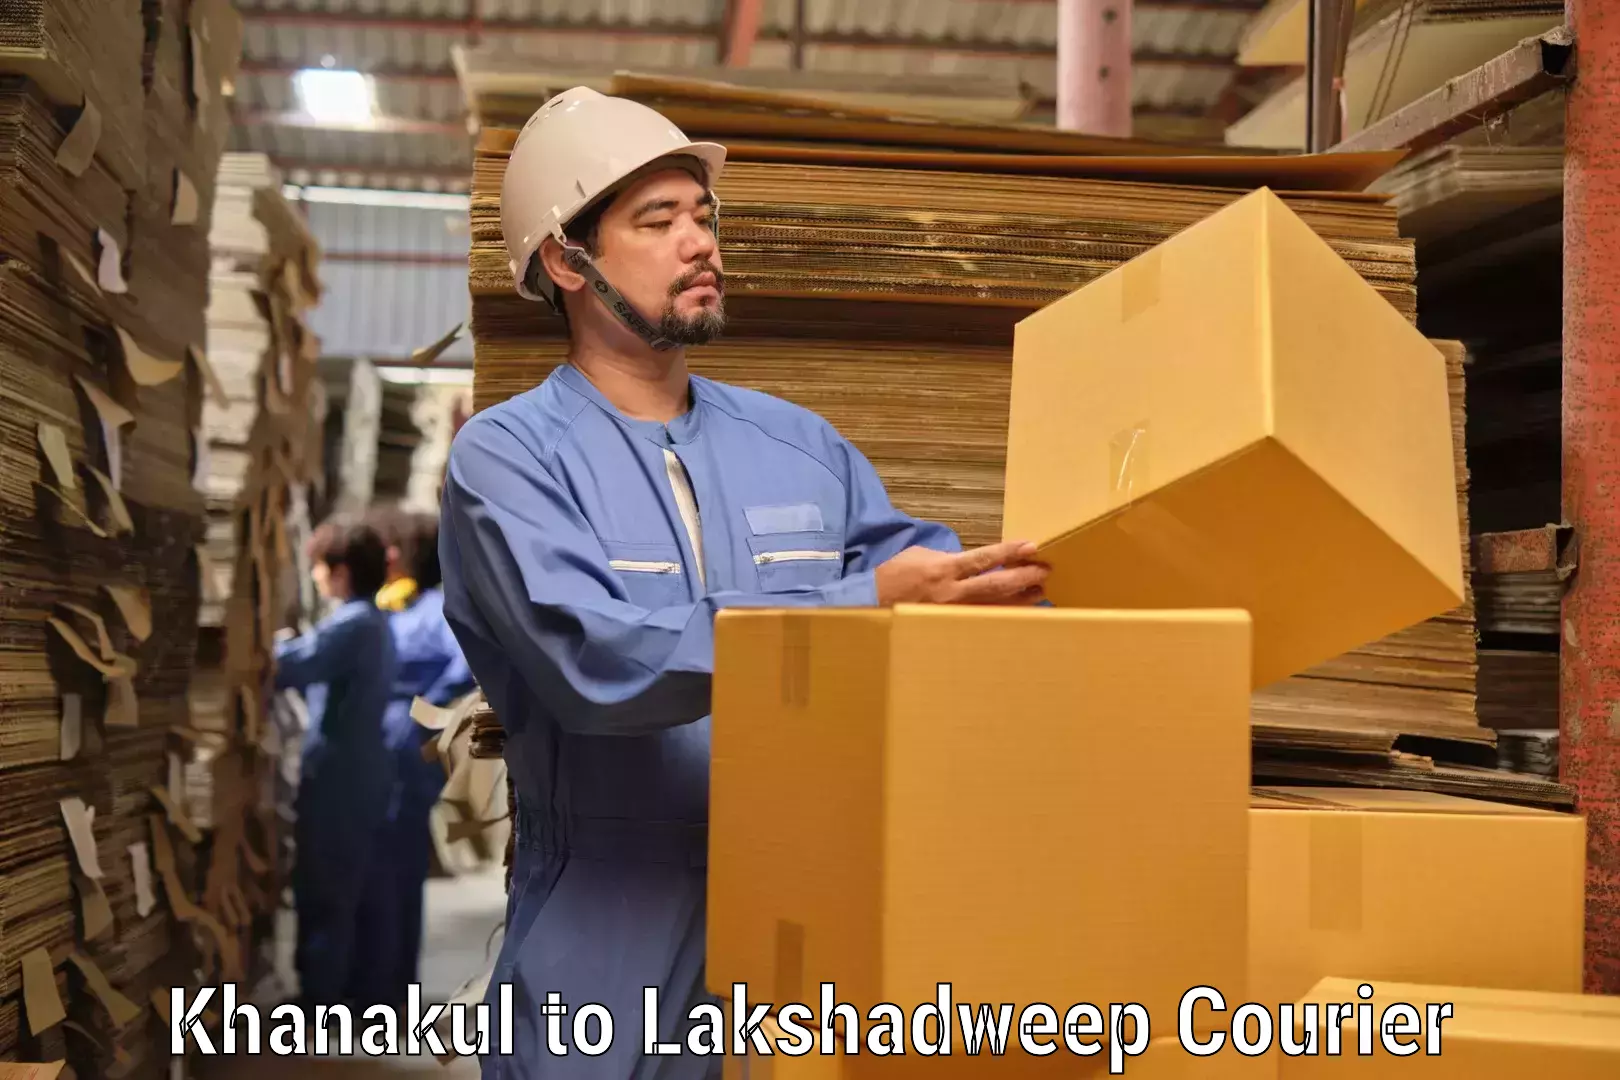 Quick booking process Khanakul to Lakshadweep